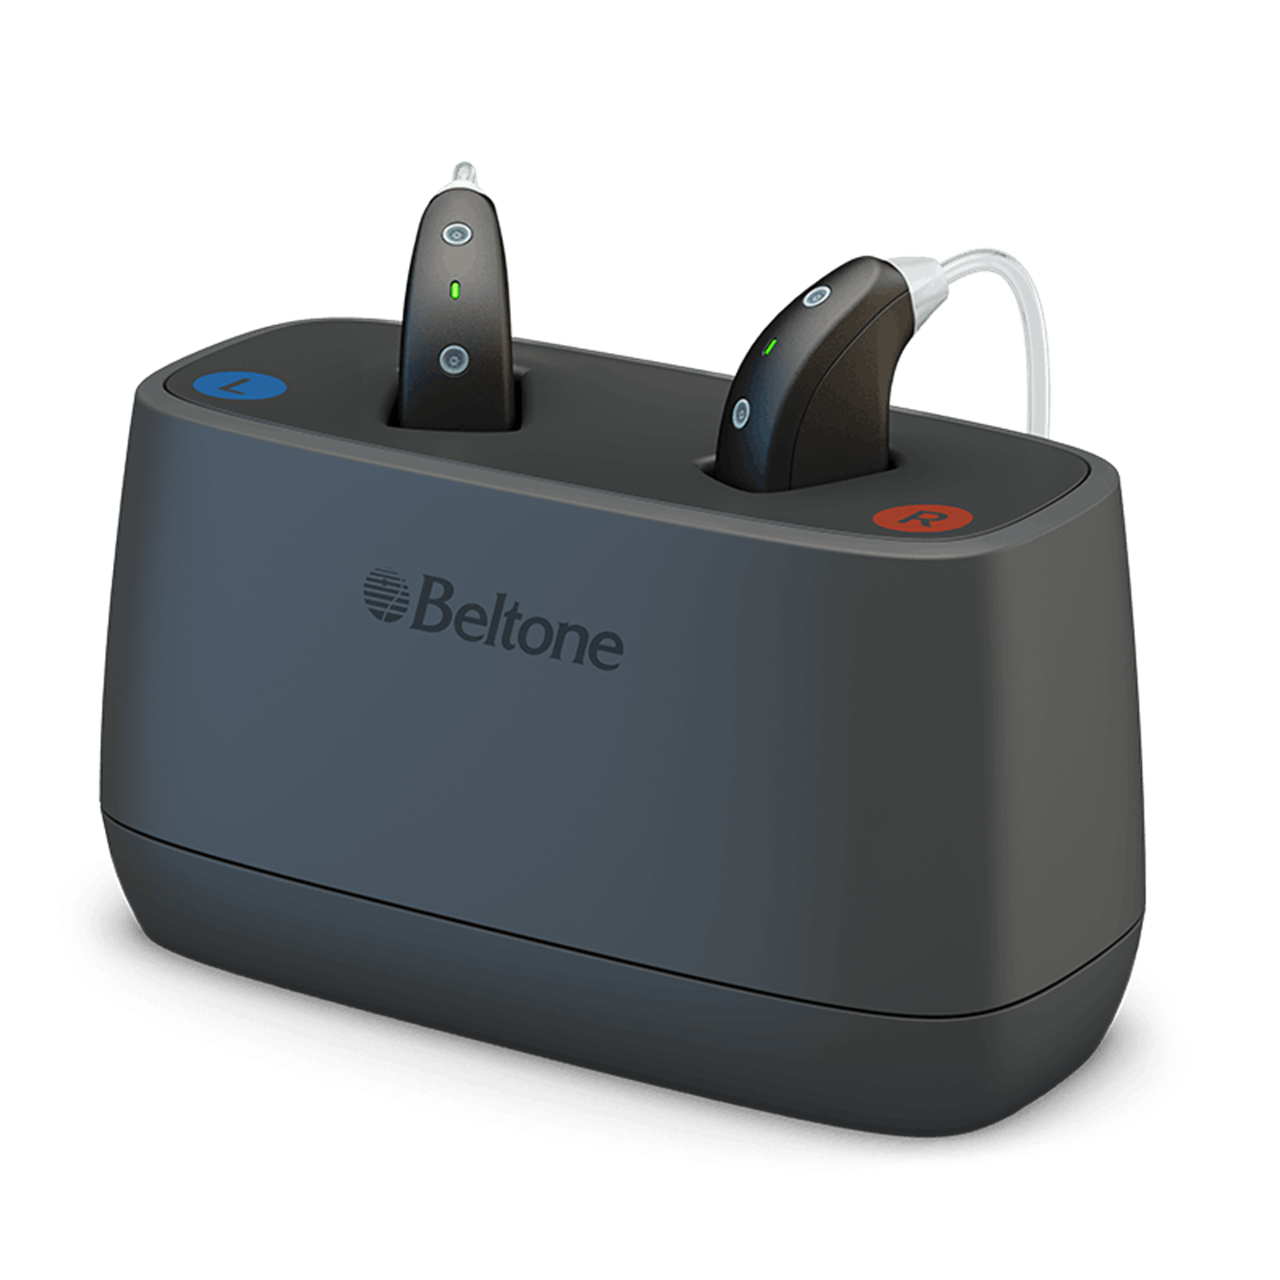 Aparaty słuchowe Beltone Imagine Behind-the-Ear (BTE) umieszczone w ładowarce stacjonarnej